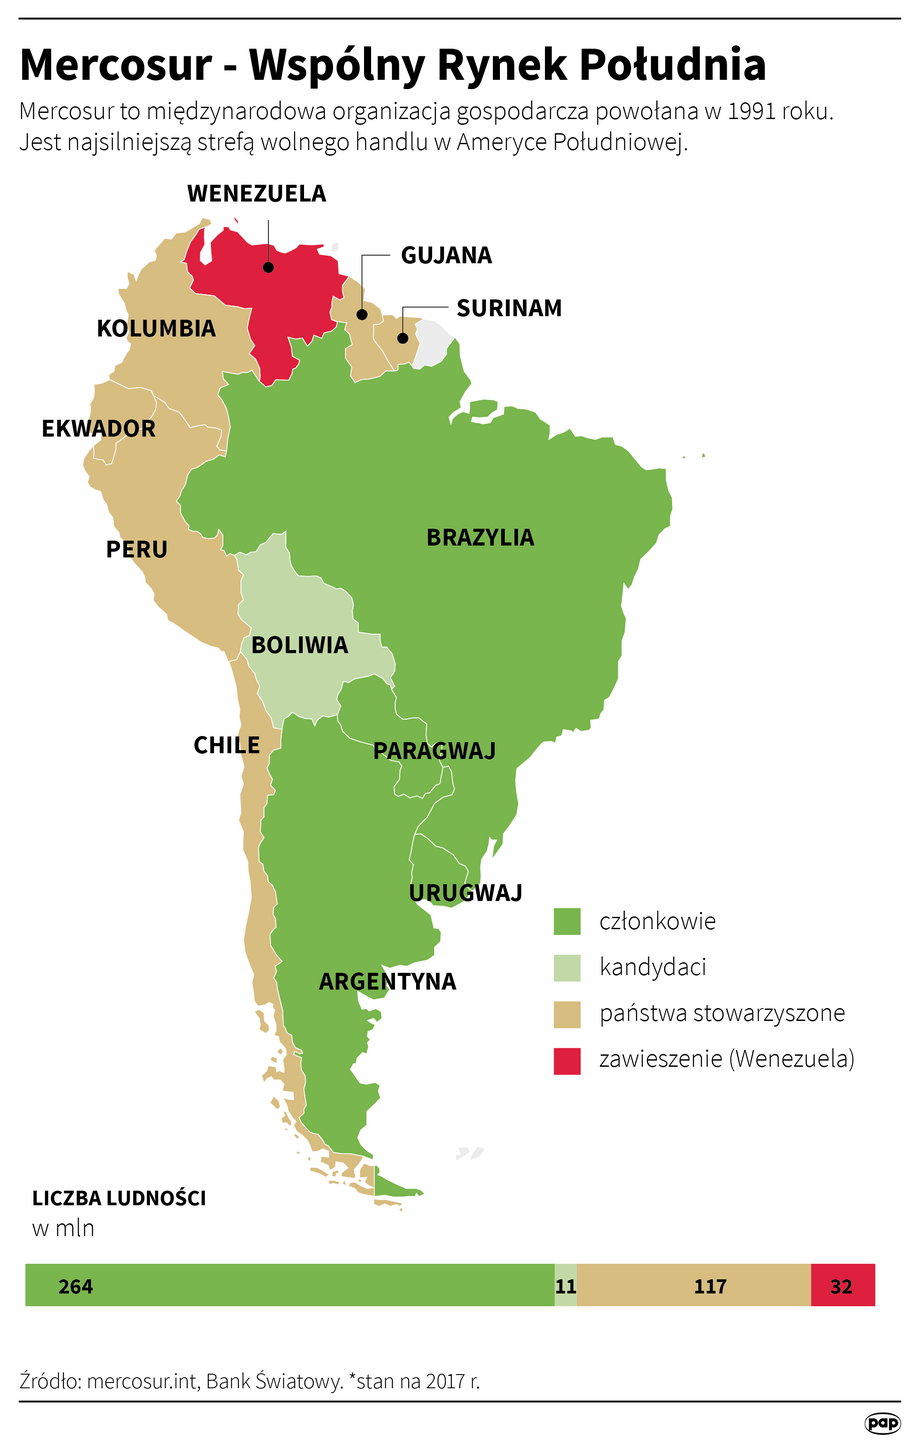 Mercosur. Wspólny Rynek Południa